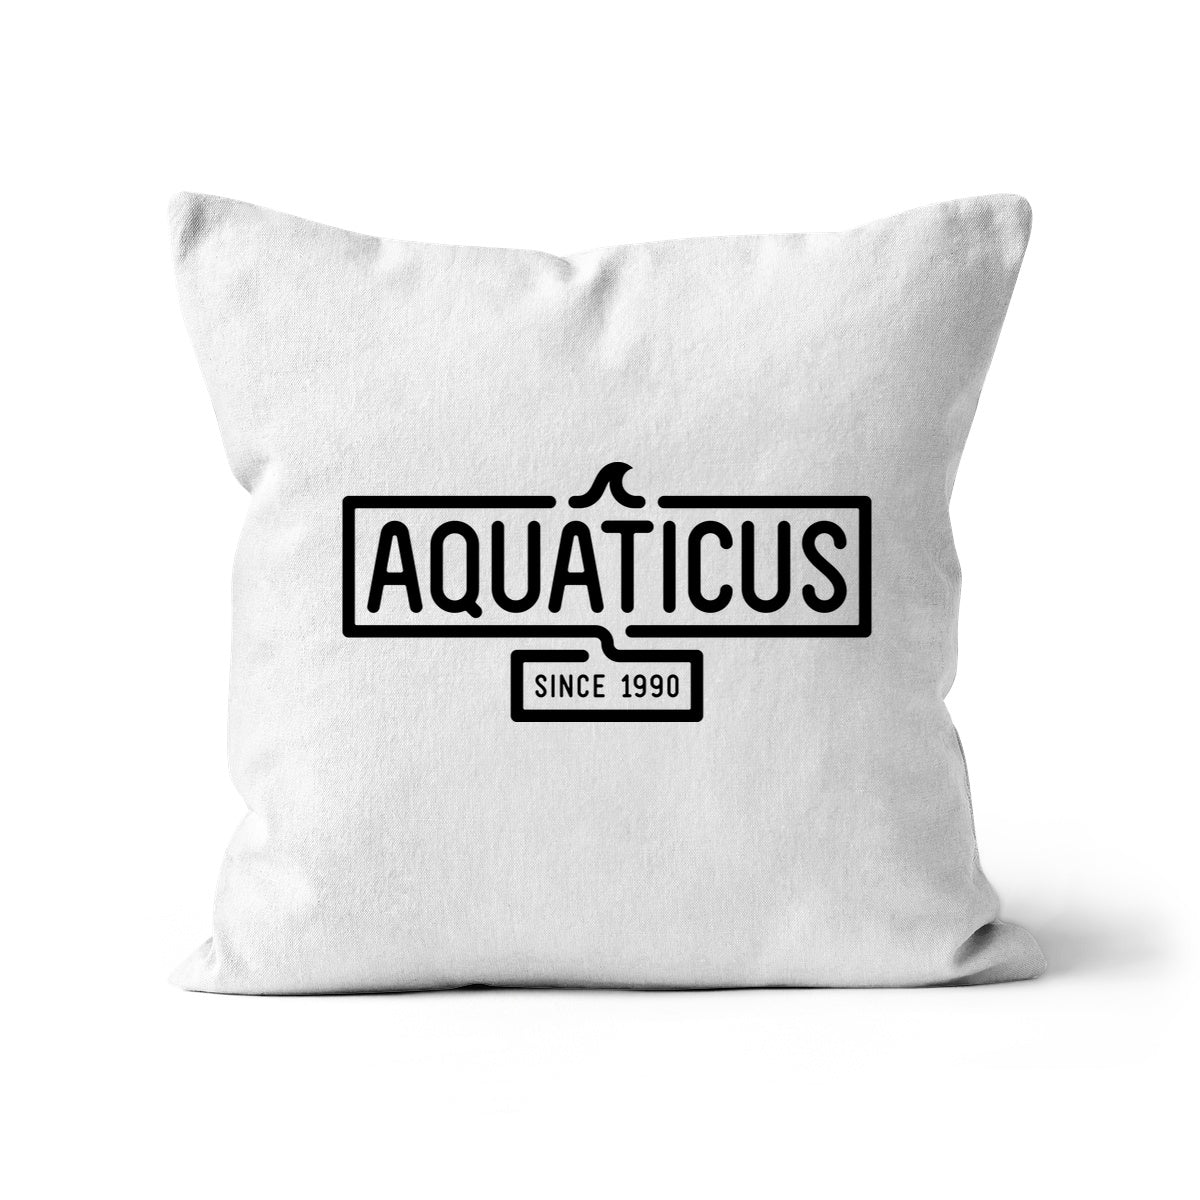 AQUA - 01- Aquaticus - Almofada